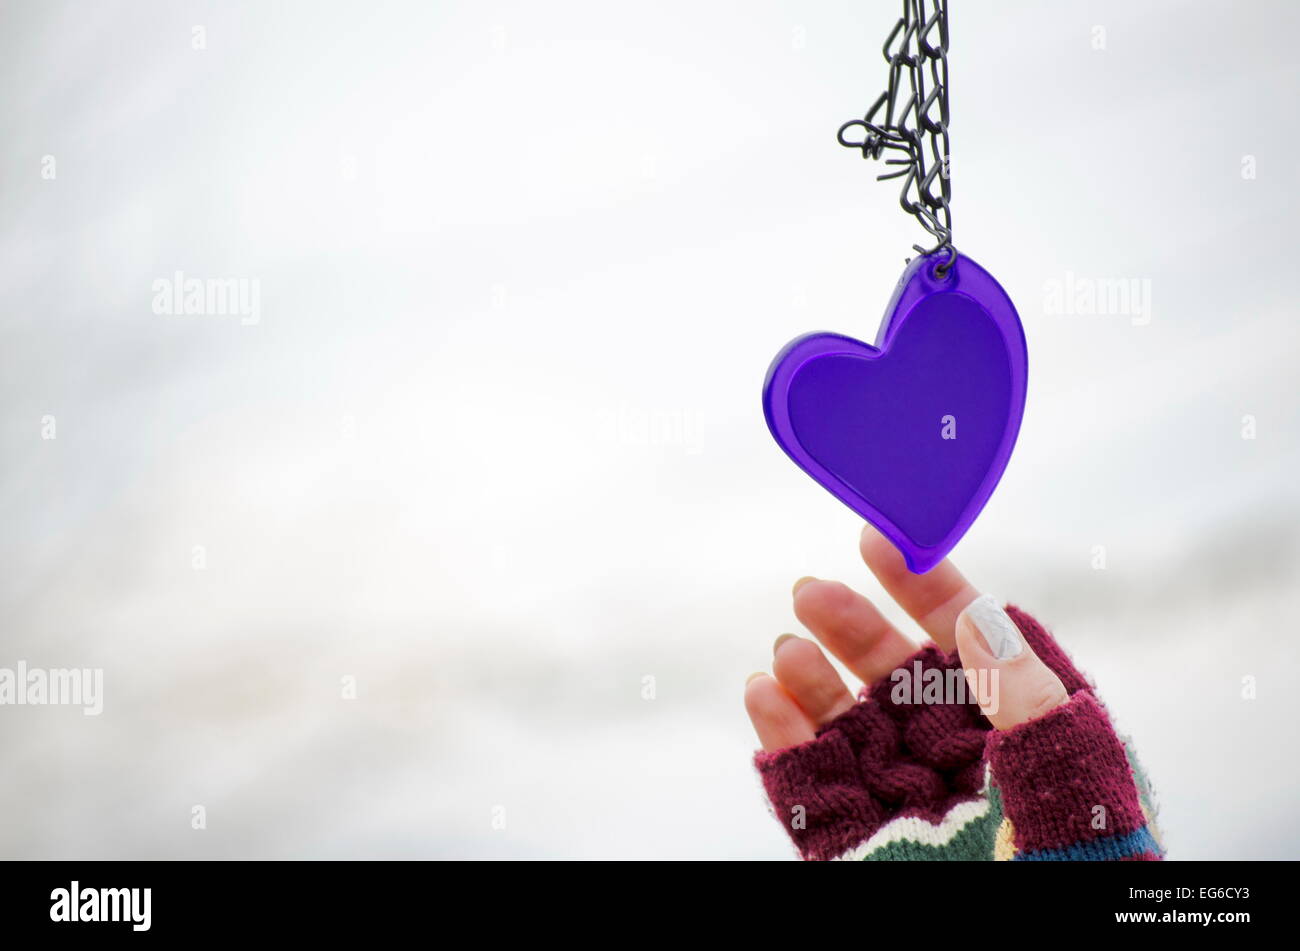 Femme dans les mains des mitaines pour atteindre le purple heart against a white background bokeh Banque D'Images